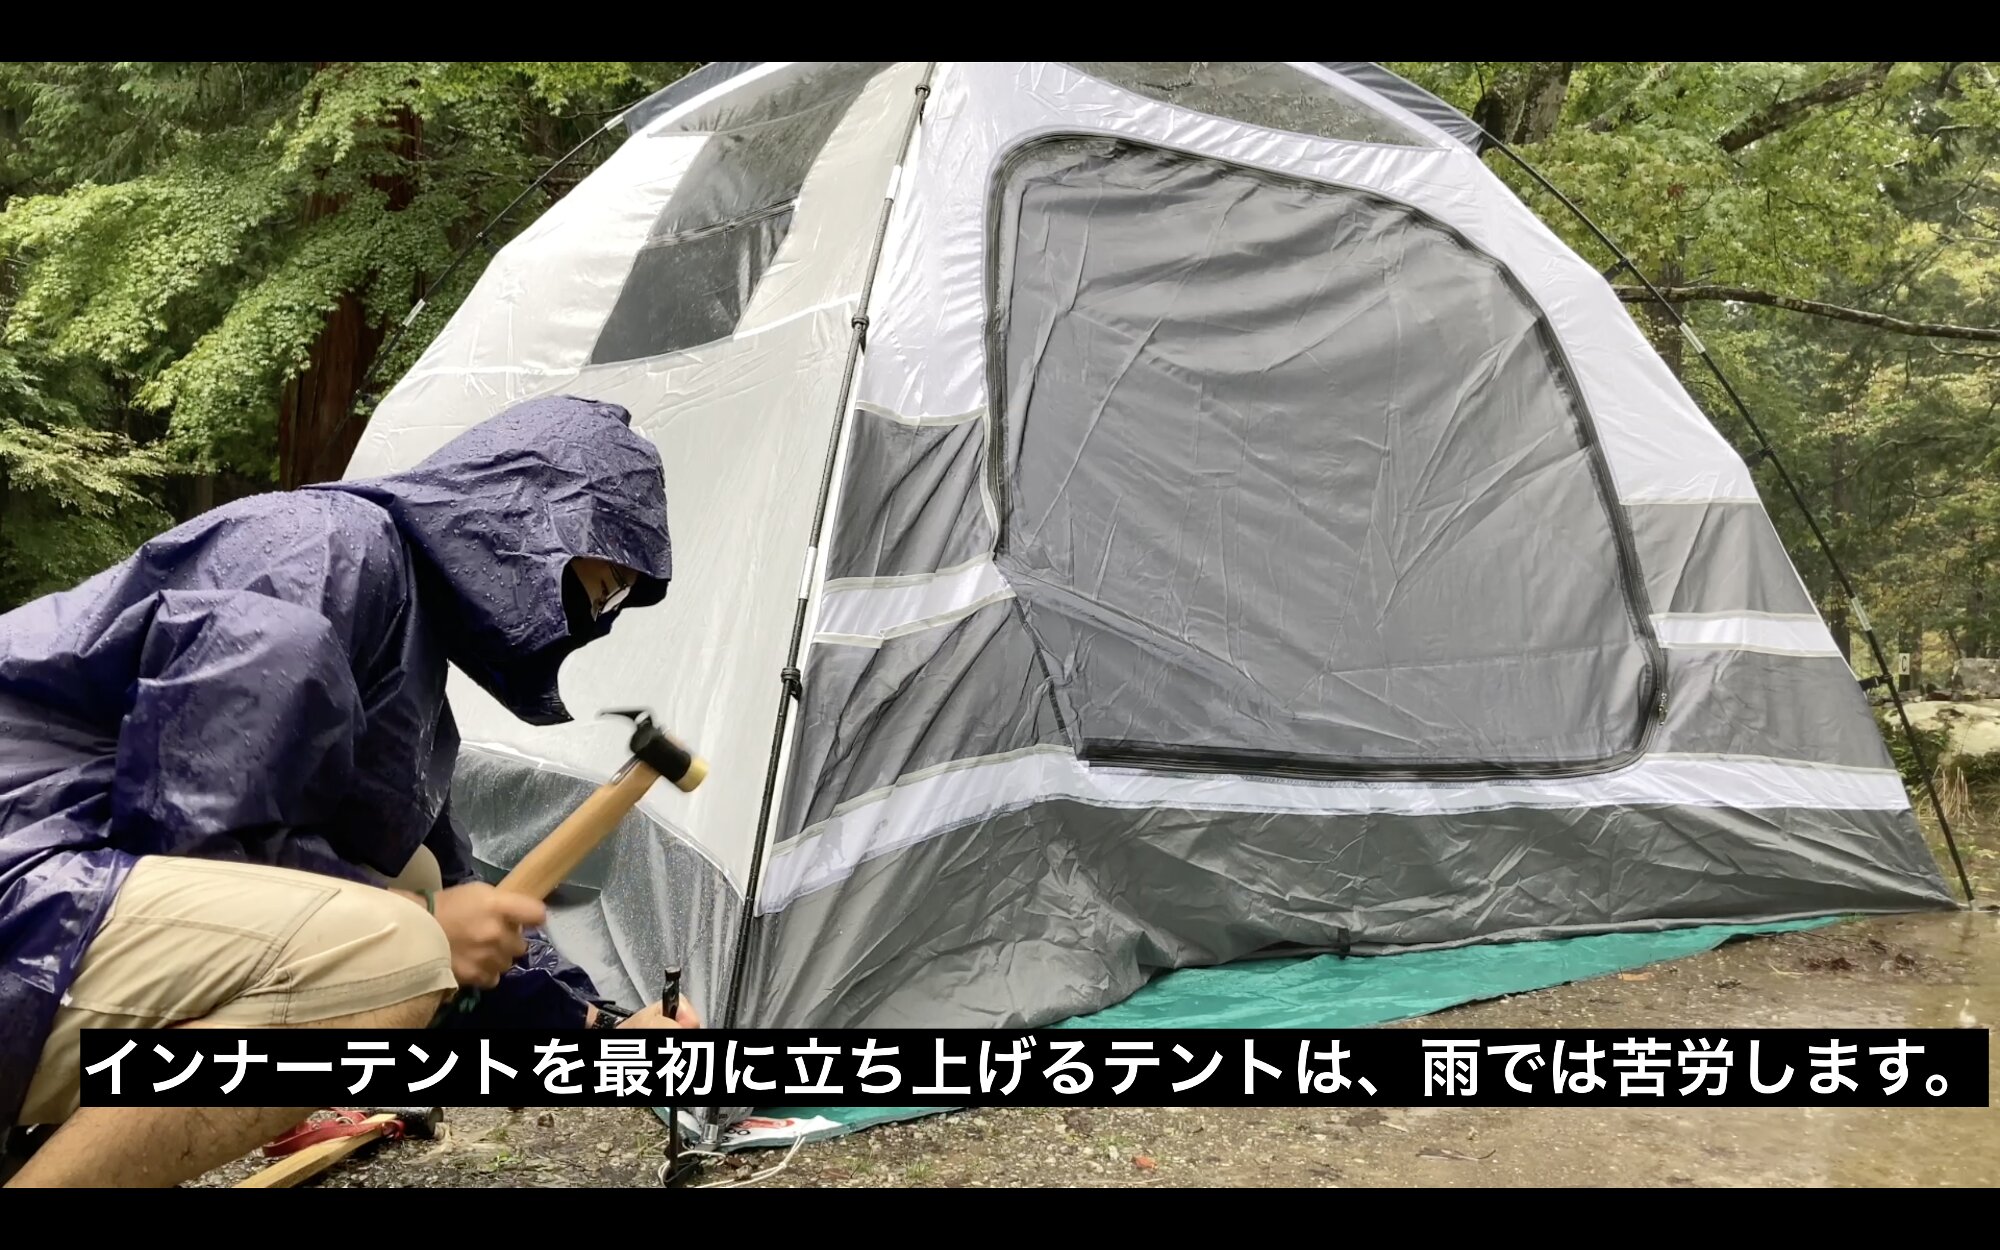 雨天時は、シェルター利用できるテントも有効かと思います。